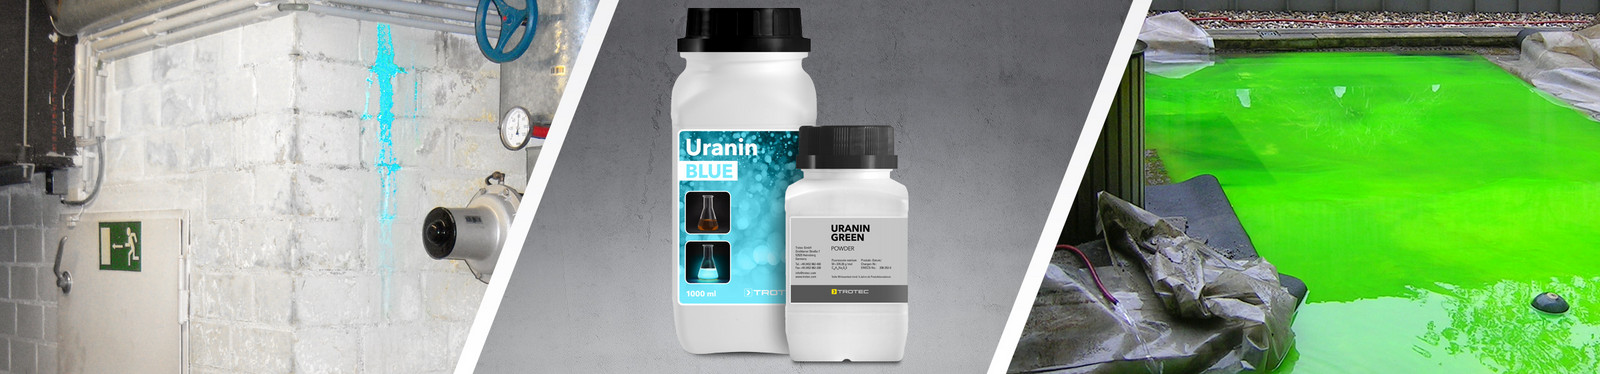 Colorant uranine - TROTEC